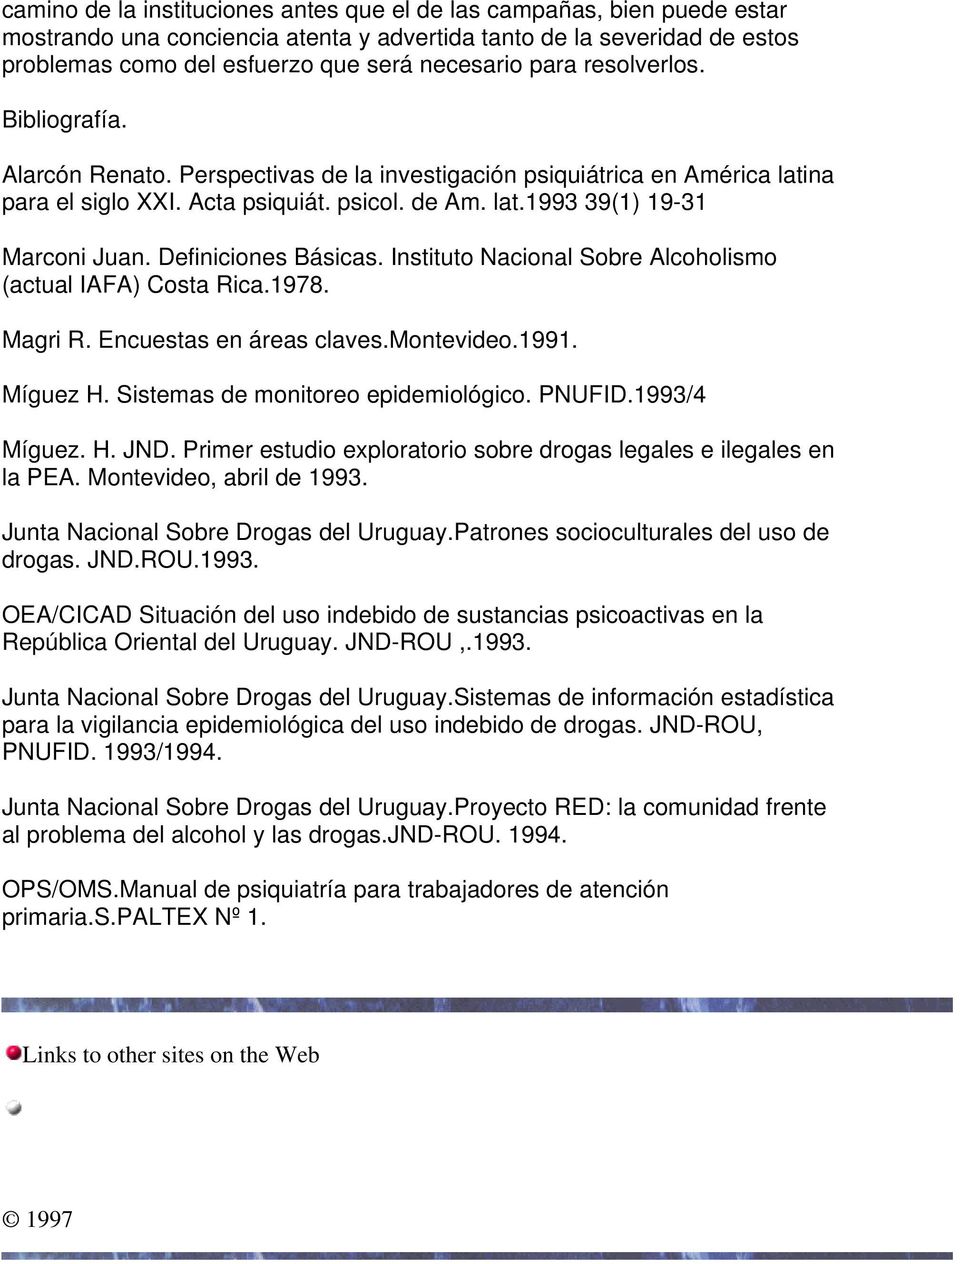 Definiciones Básicas. Instituto Nacional Sobre Alcoholismo (actual IAFA) Costa Rica.1978. Magri R. Encuestas en áreas claves.montevideo.1991. Míguez H. Sistemas de monitoreo epidemiológico. PNUFID.